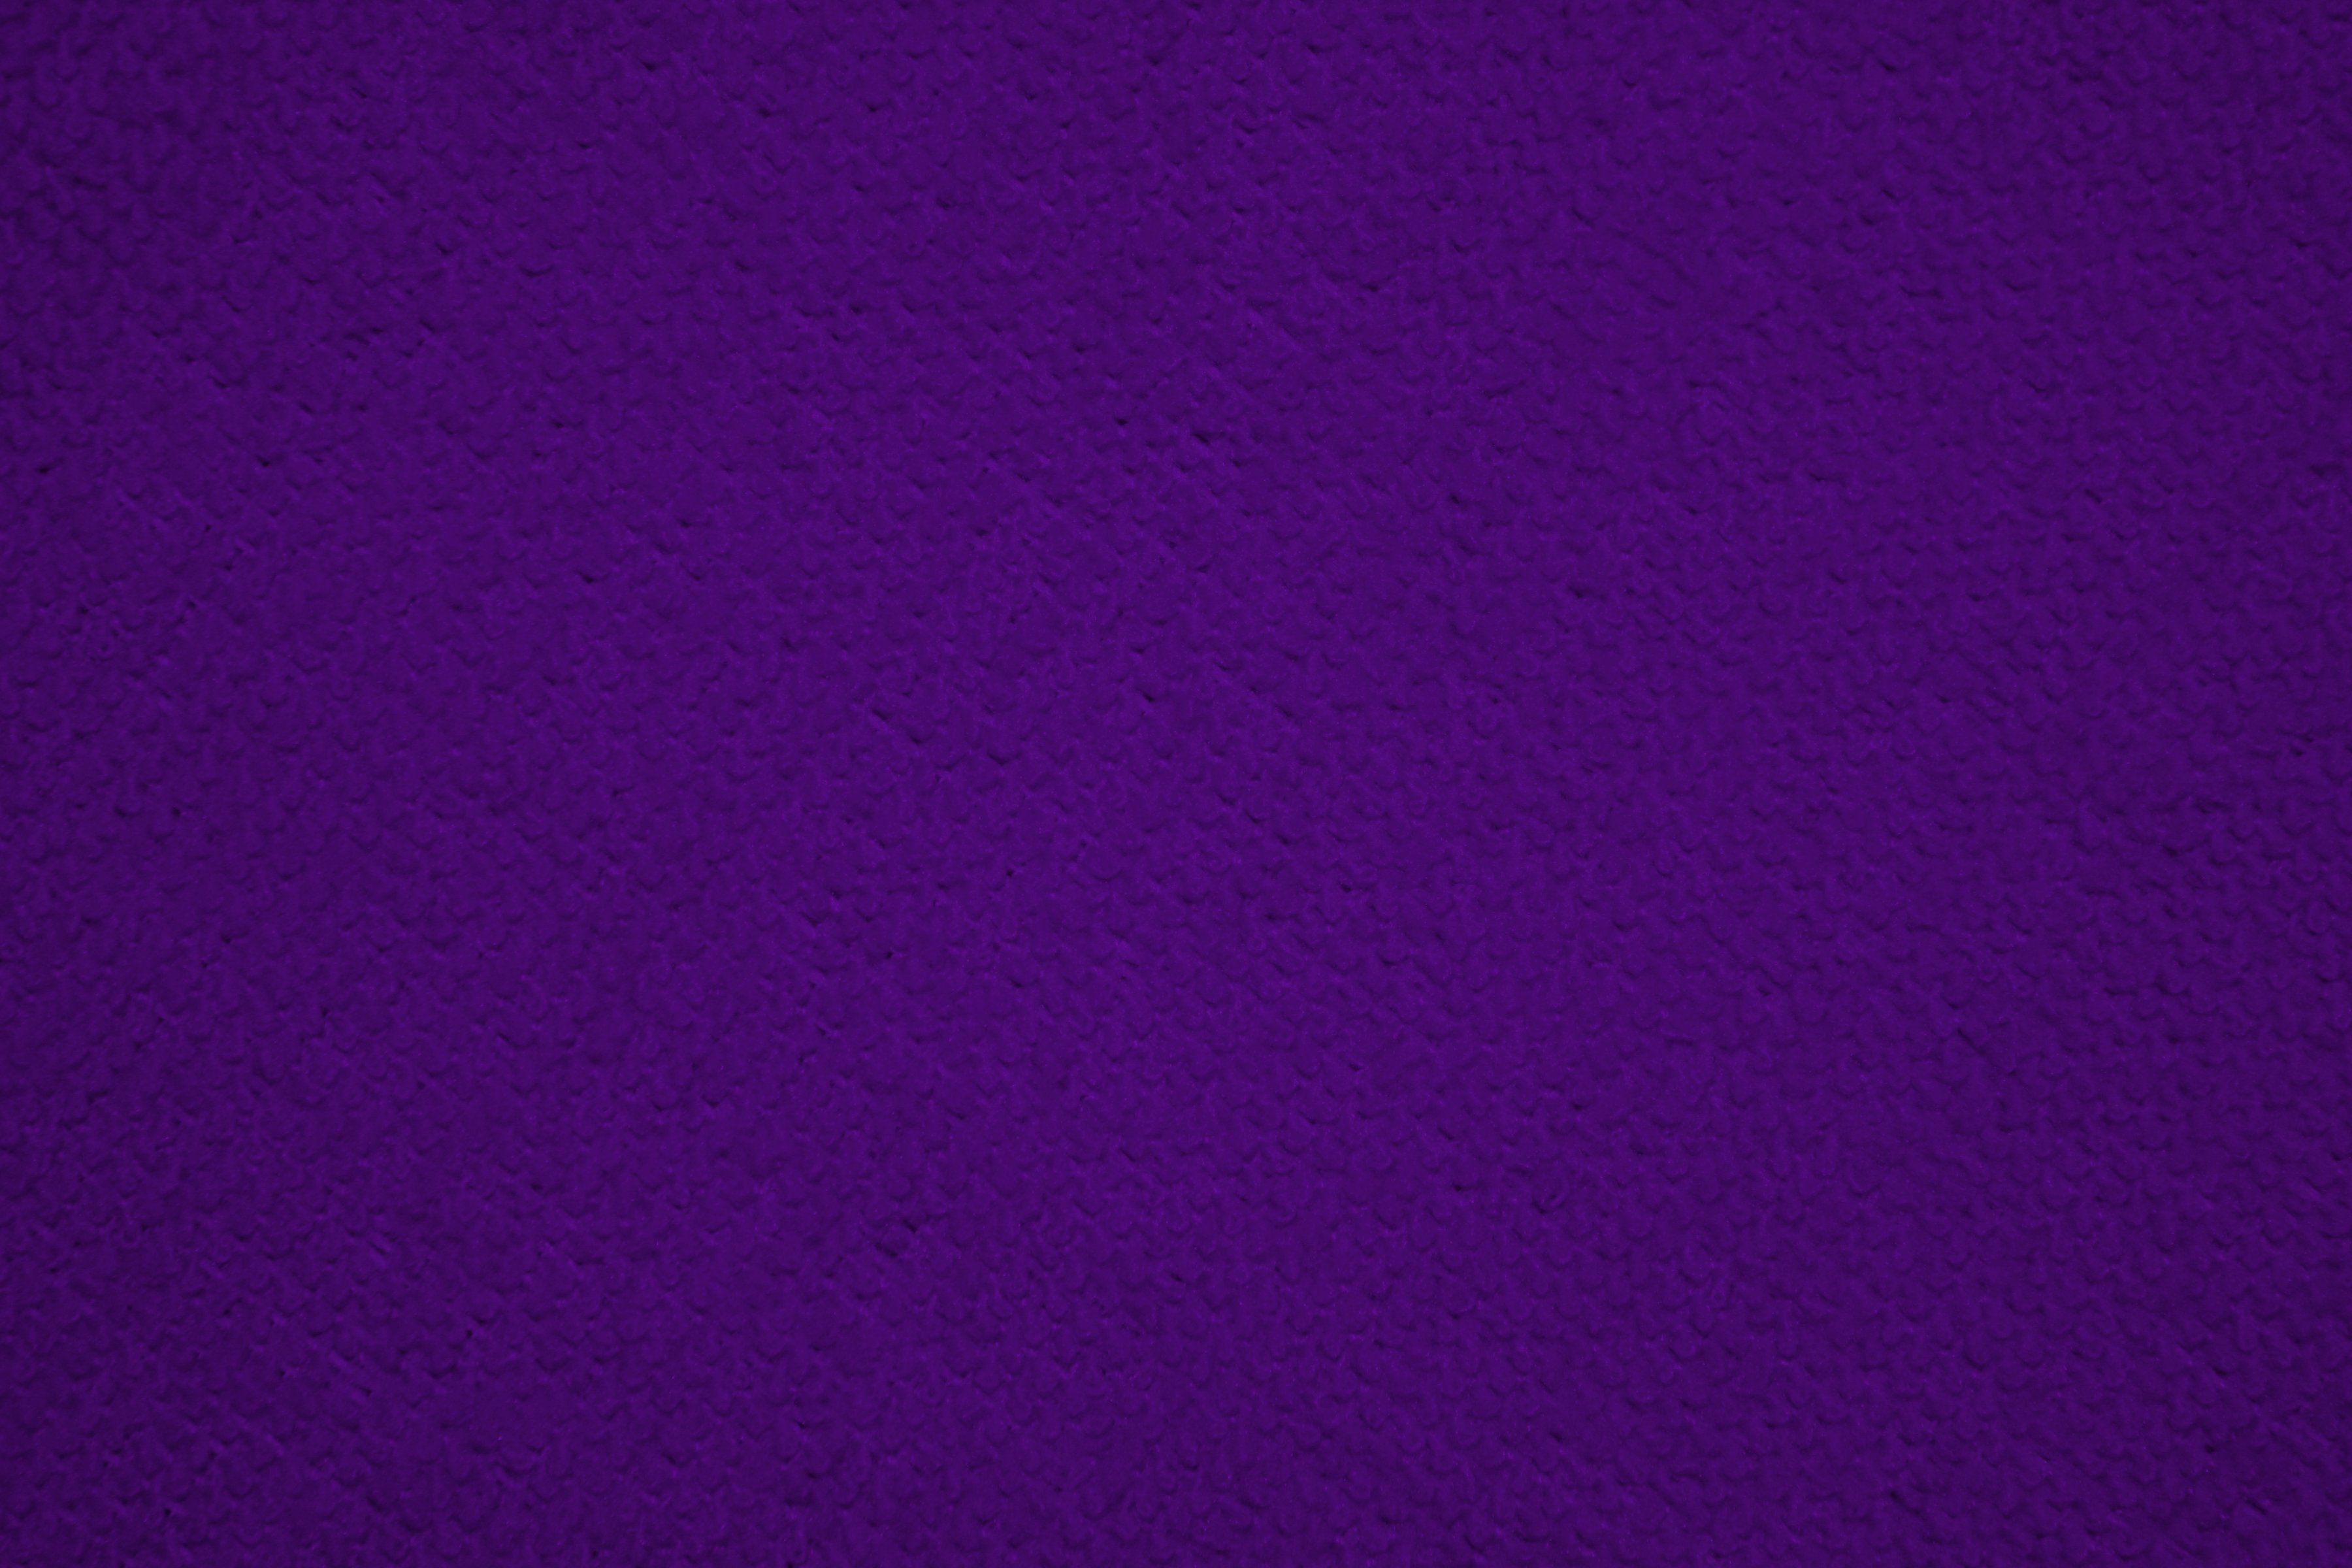 Để tạo ra một không gian sạch sẽ và hài hòa, vải lau màu tím đậm chính là sự lựa chọn hoàn hảo của bạn. Màu tím đậm sẽ mang lại sự đặc biệt và tạo nên điểm nhấn cho bất kỳ phòng nào. Đón xem hình ảnh để có cái nhìn rõ ràng hơn về sản phẩm này nhé!